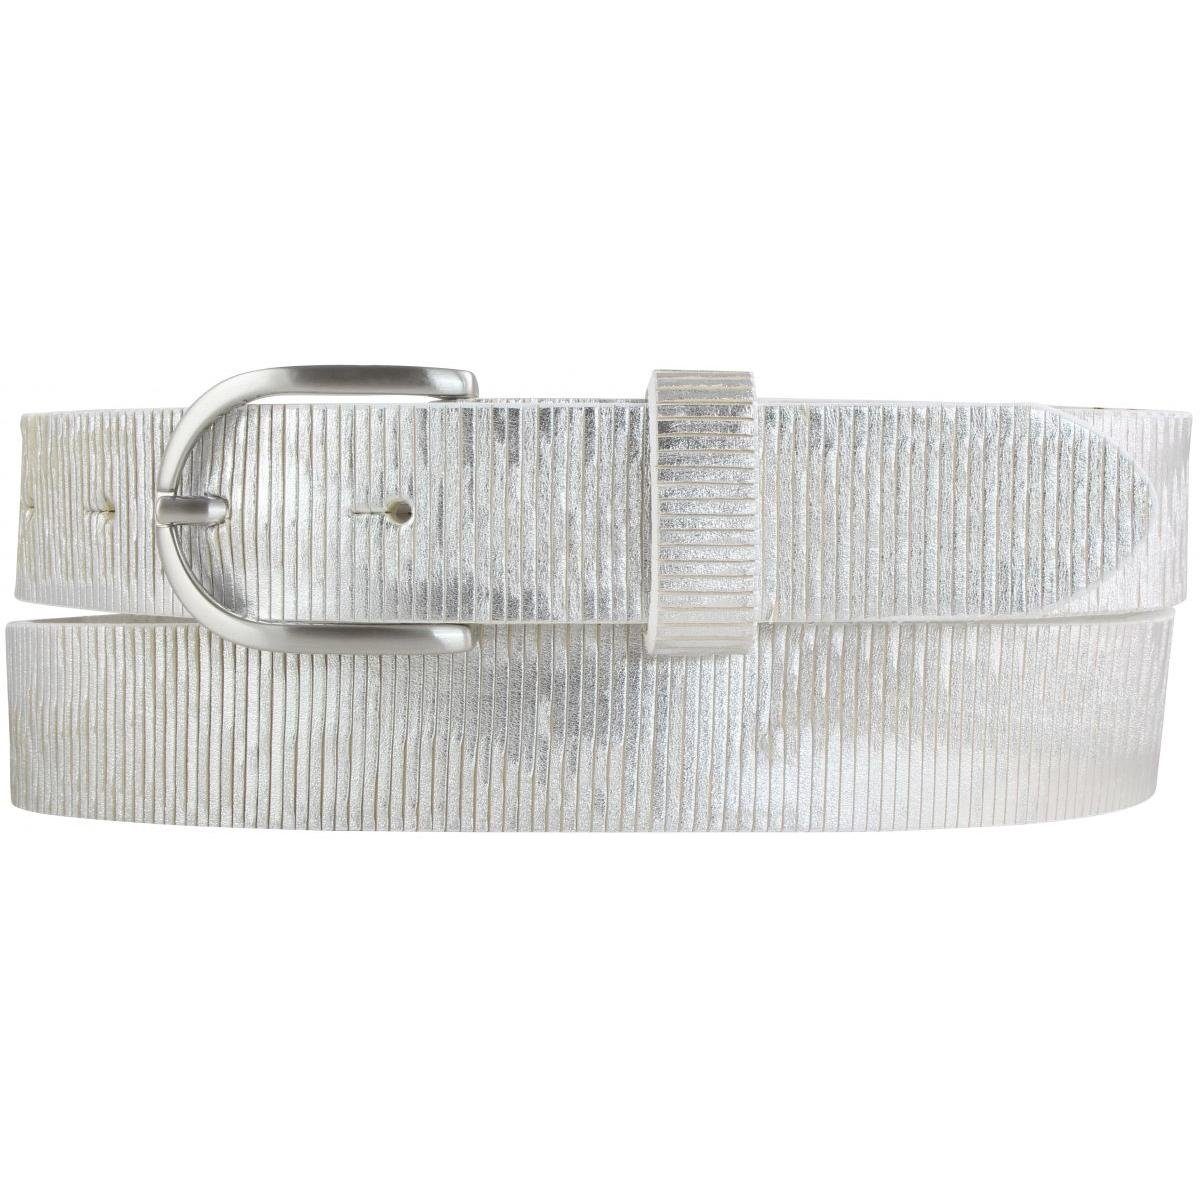 BELTINGER Ledergürtel Damengürtel Metall-Optik aus Vollrindleder 3 cm - Damen-Gürtel Metalli Weiß, Silber | Gürtel